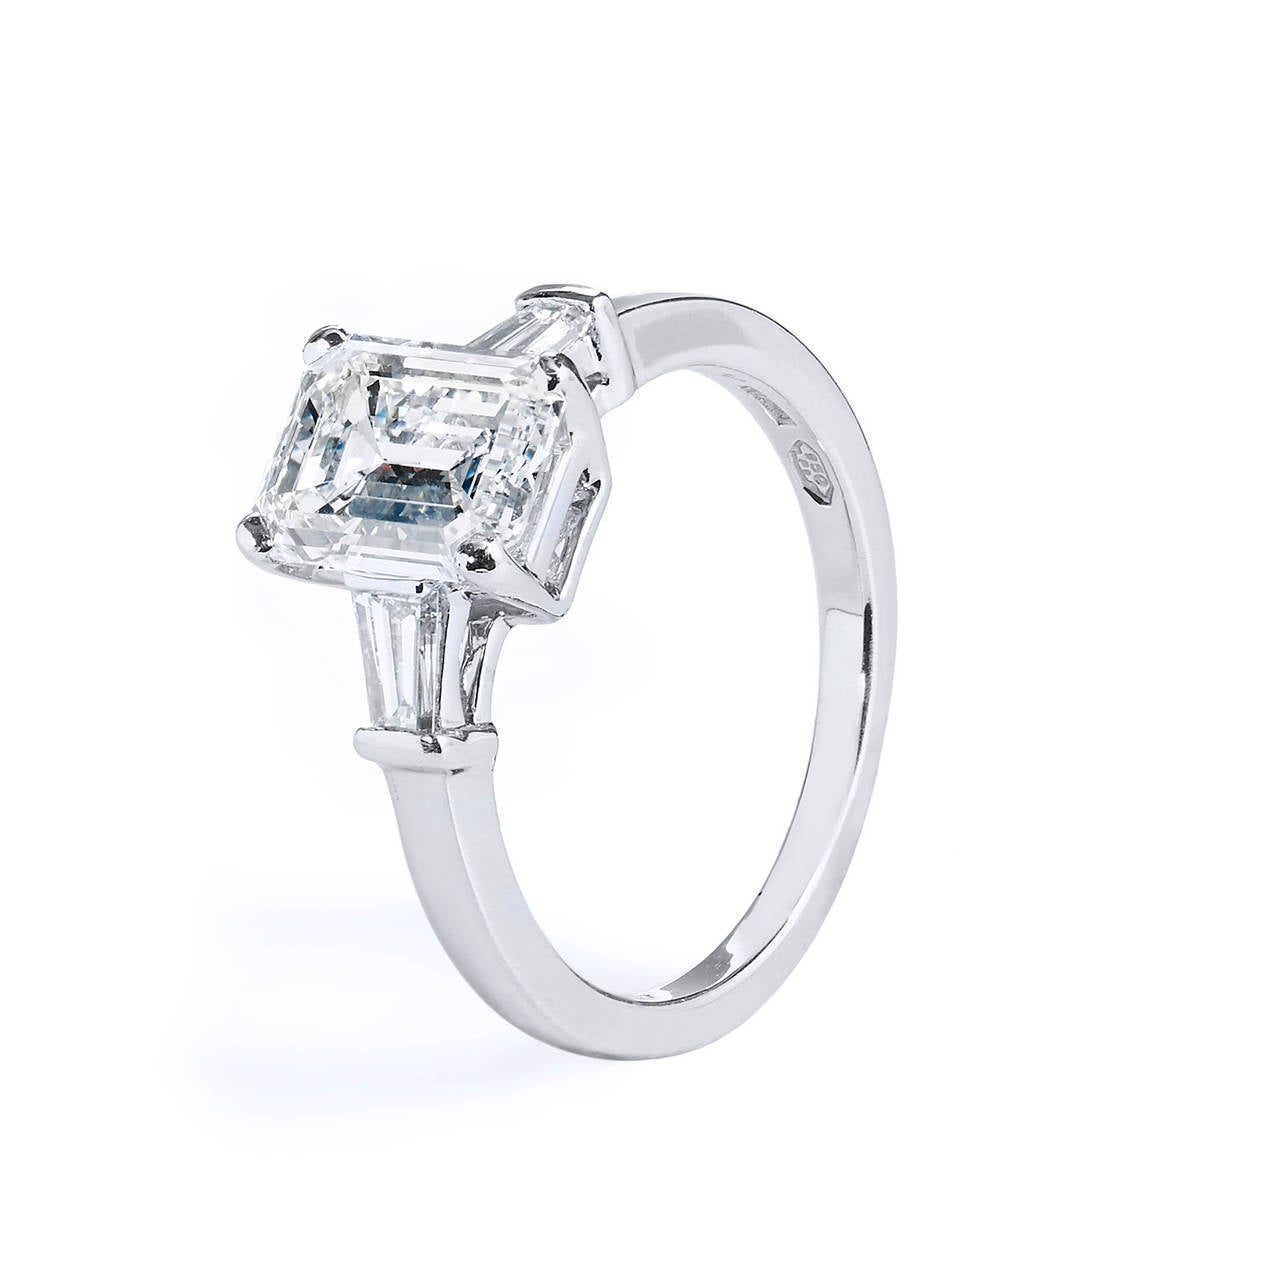 Bvlgari 2.01 Carat GIA Cert Emerald Cut Diamond Platinum Engagement Ring 1